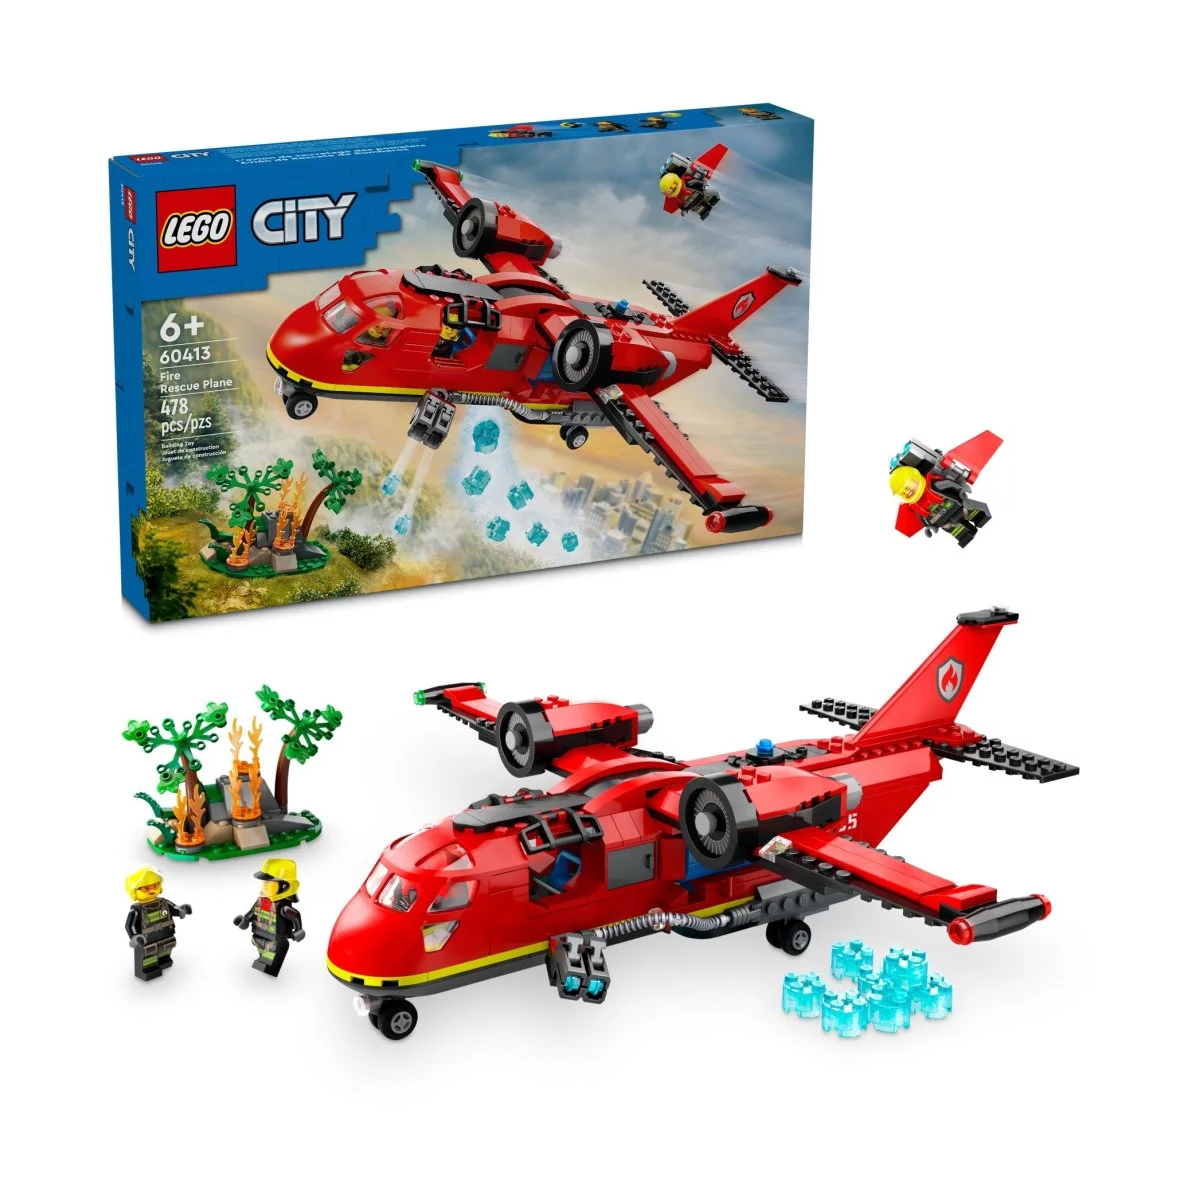 Конструктор Lego City Fire Rescue Plane 60413, 478 деталей фотографии